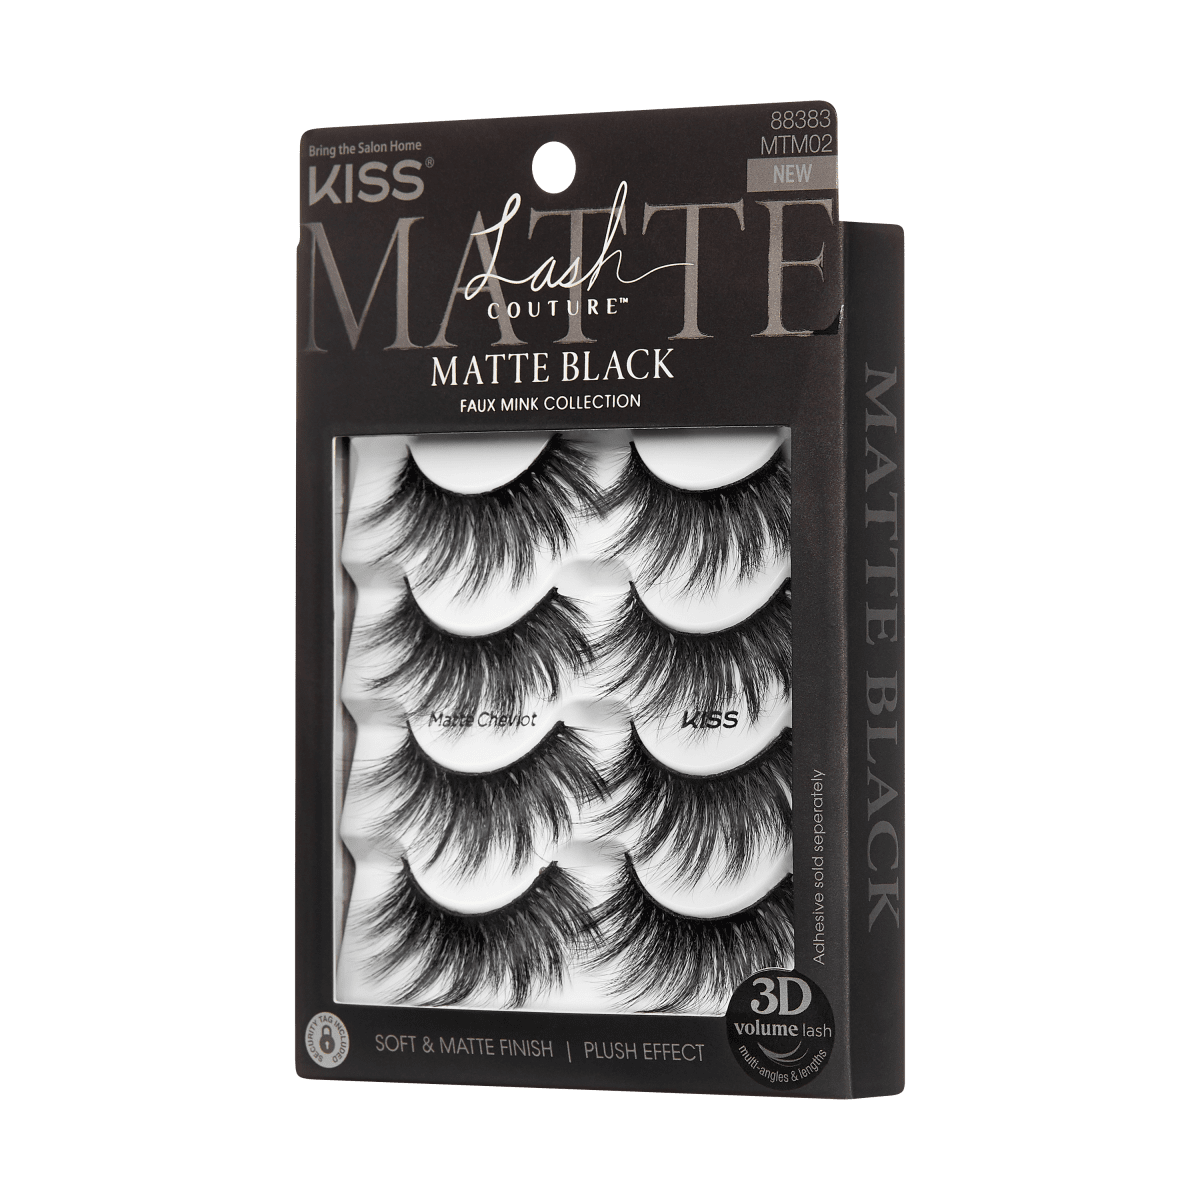 KISS Lash Couture Matte Black Multipack - Matte Cheviot